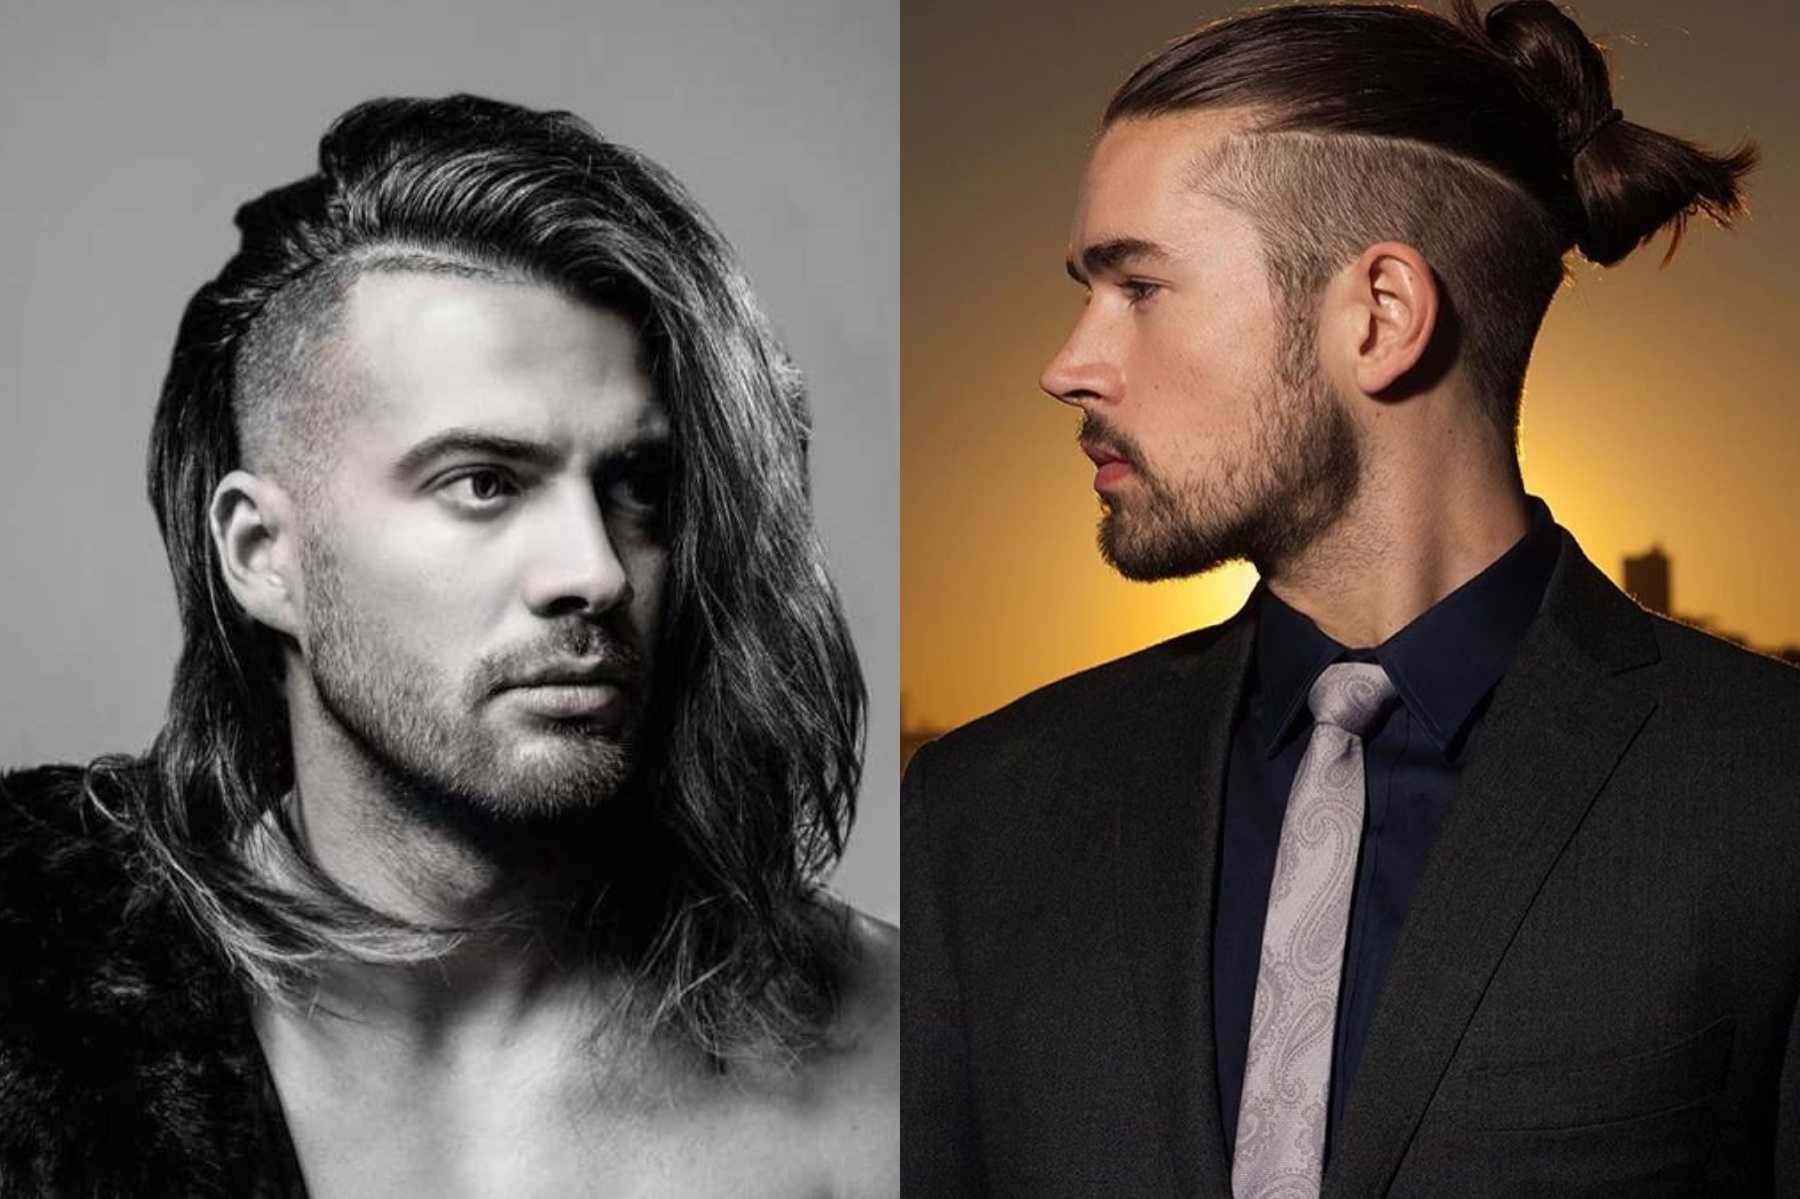 7 способов собрать мужские волосы в хвостик